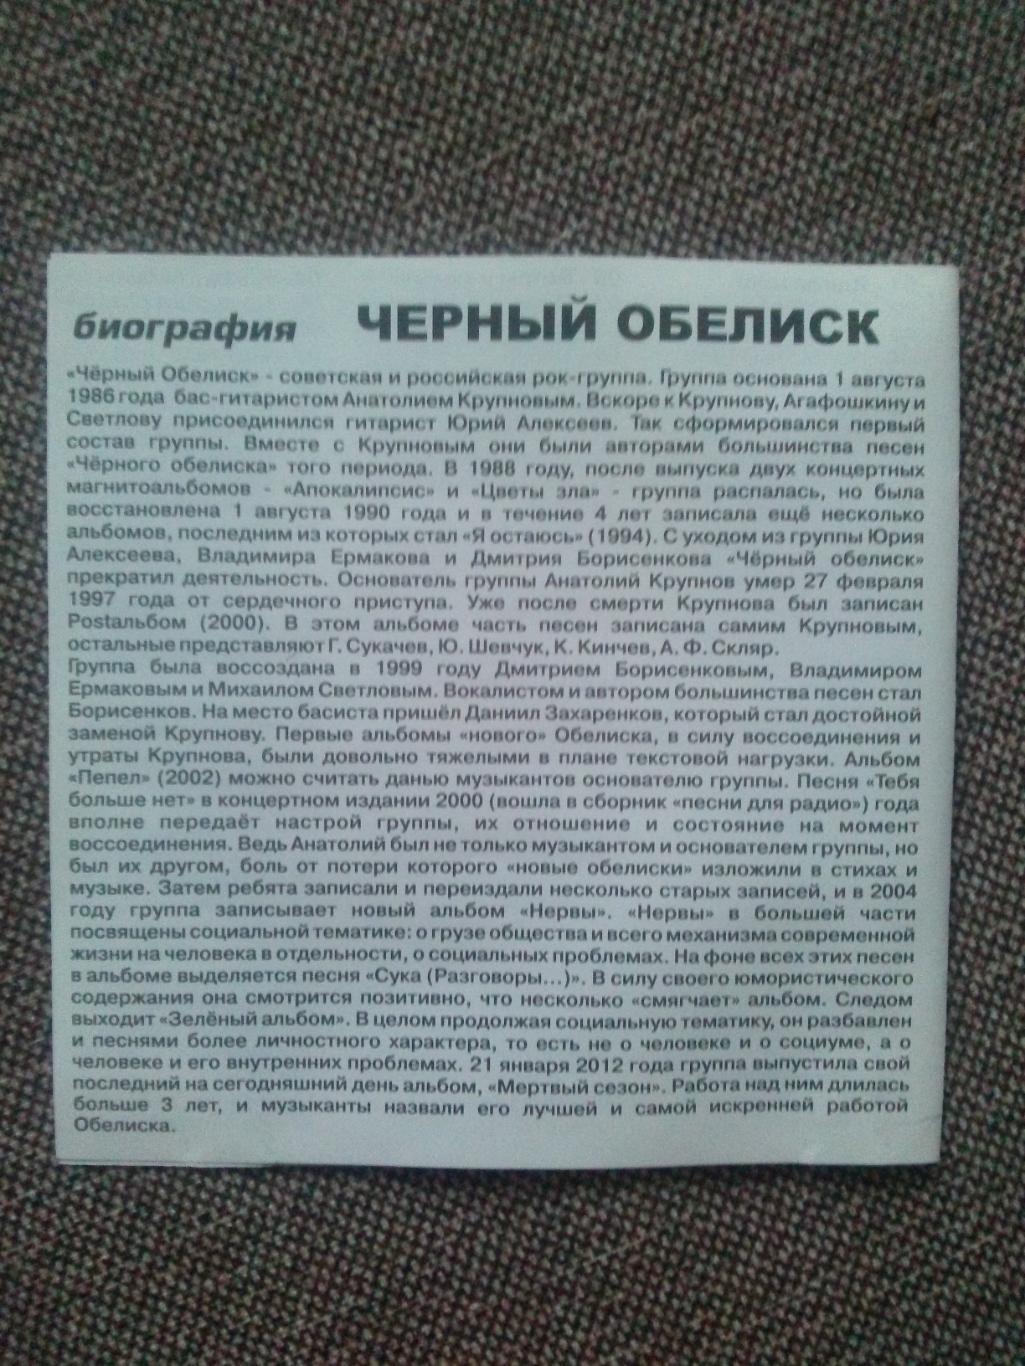 MP - 3 CD : группа Черный обелиск 1991 - 2012 гг. (13 альбомов) Русский рок 1